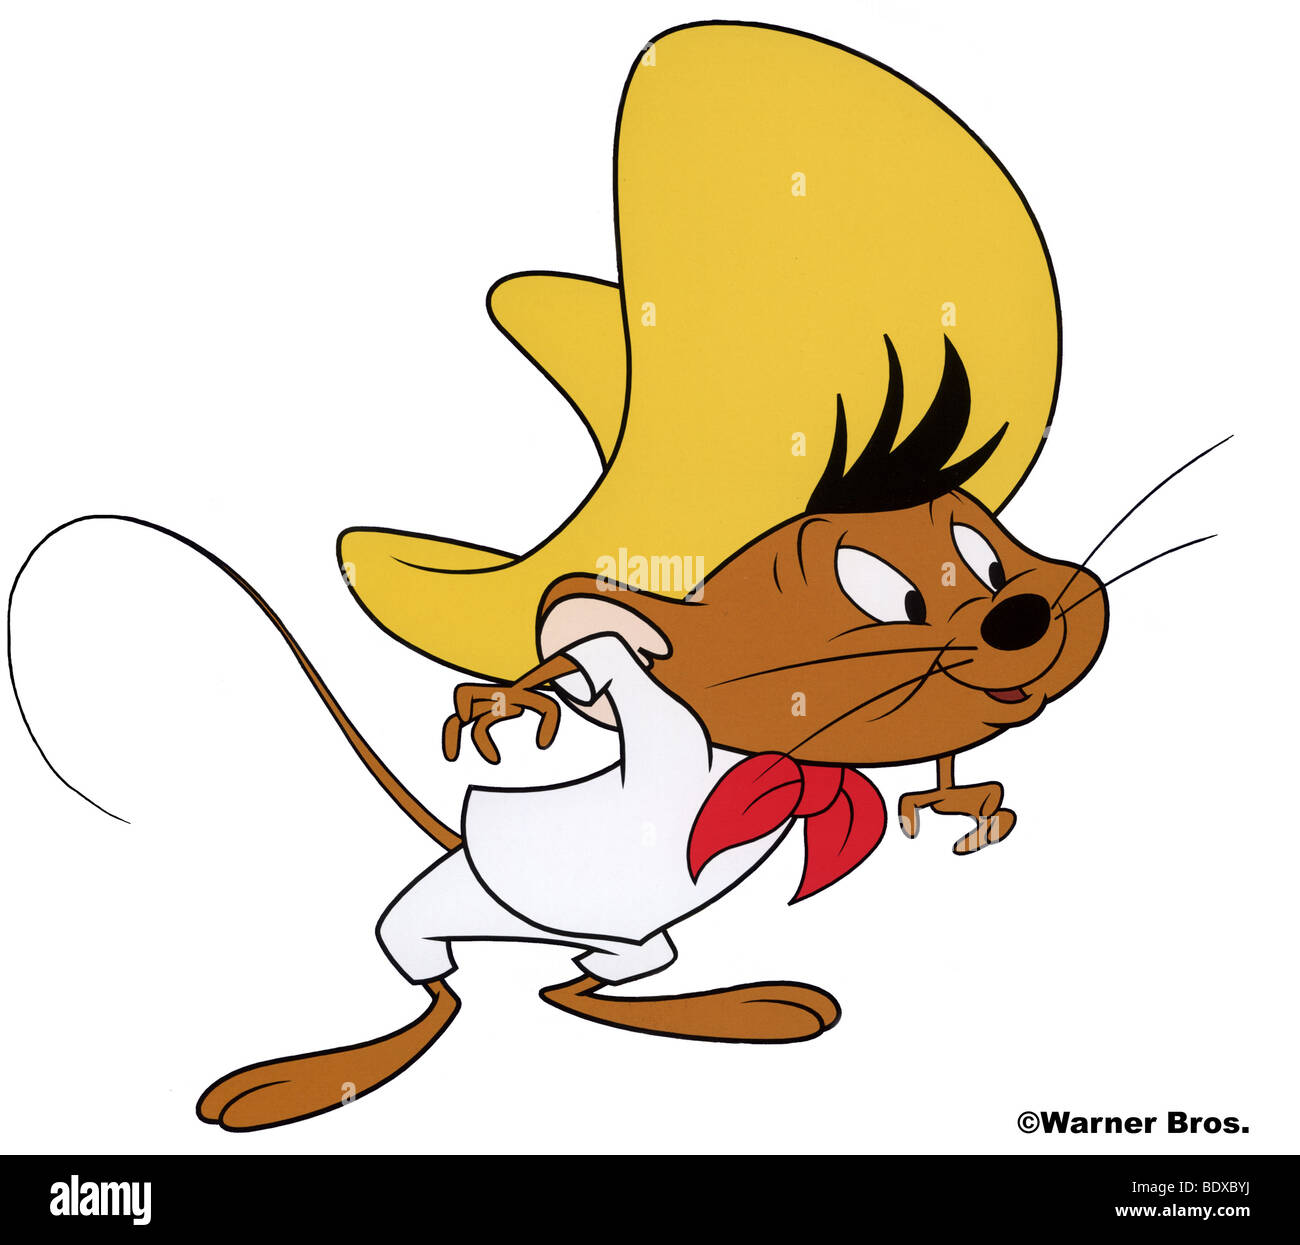 SPEEDY GONZALES - Warner Bros cartoon character Stock Photo